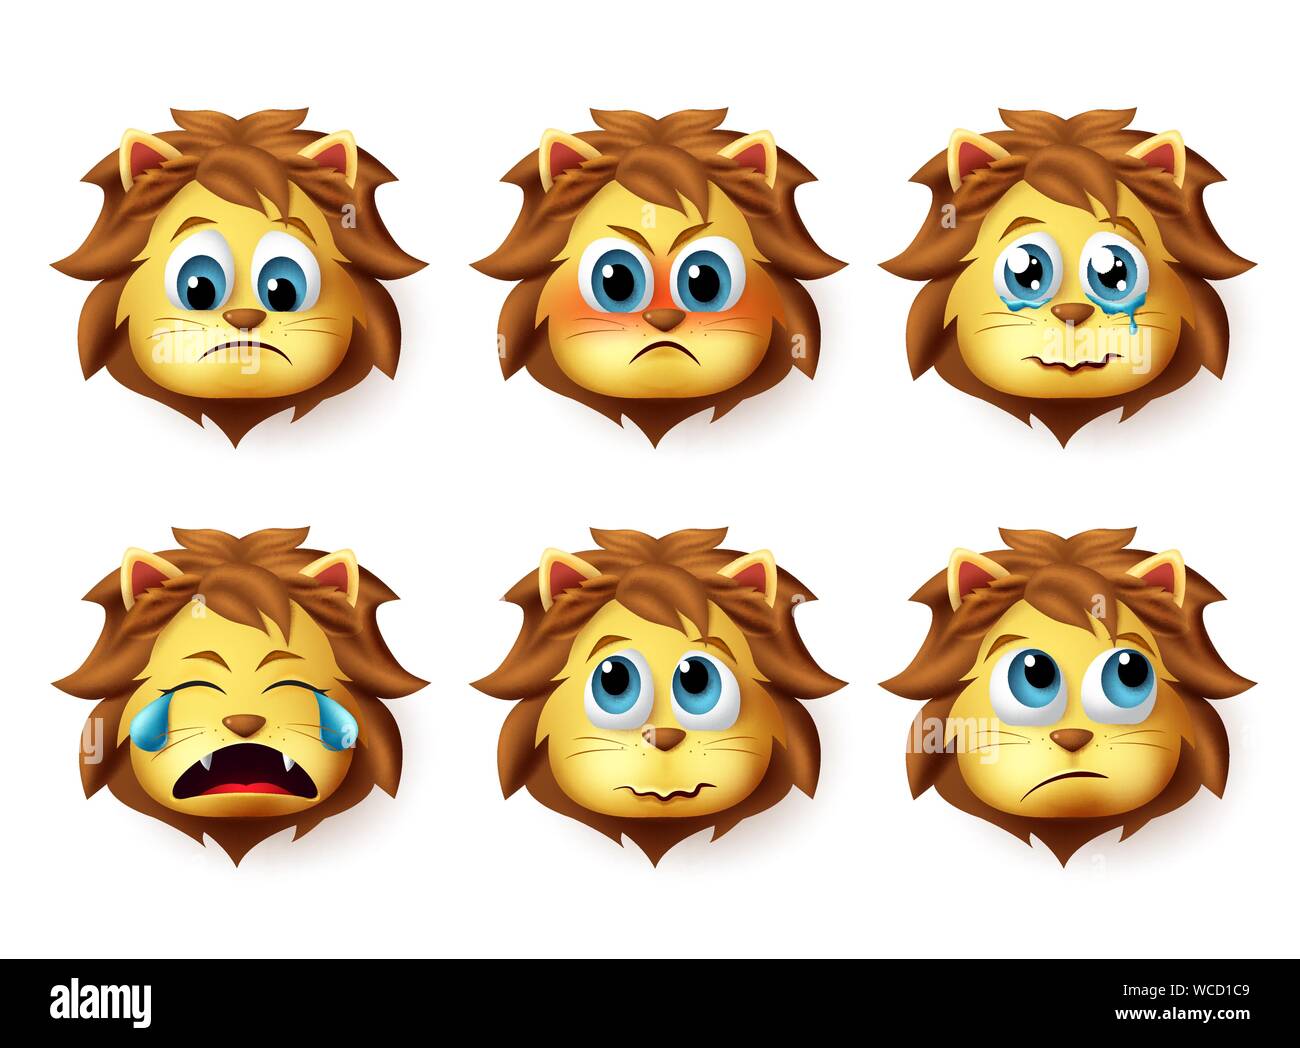 León emoji vector animal. Cute emoji de leones cara triste y enojado emociones y expresiones aisladas en fondo blanco. Ilustración vectorial. Ilustración del Vector